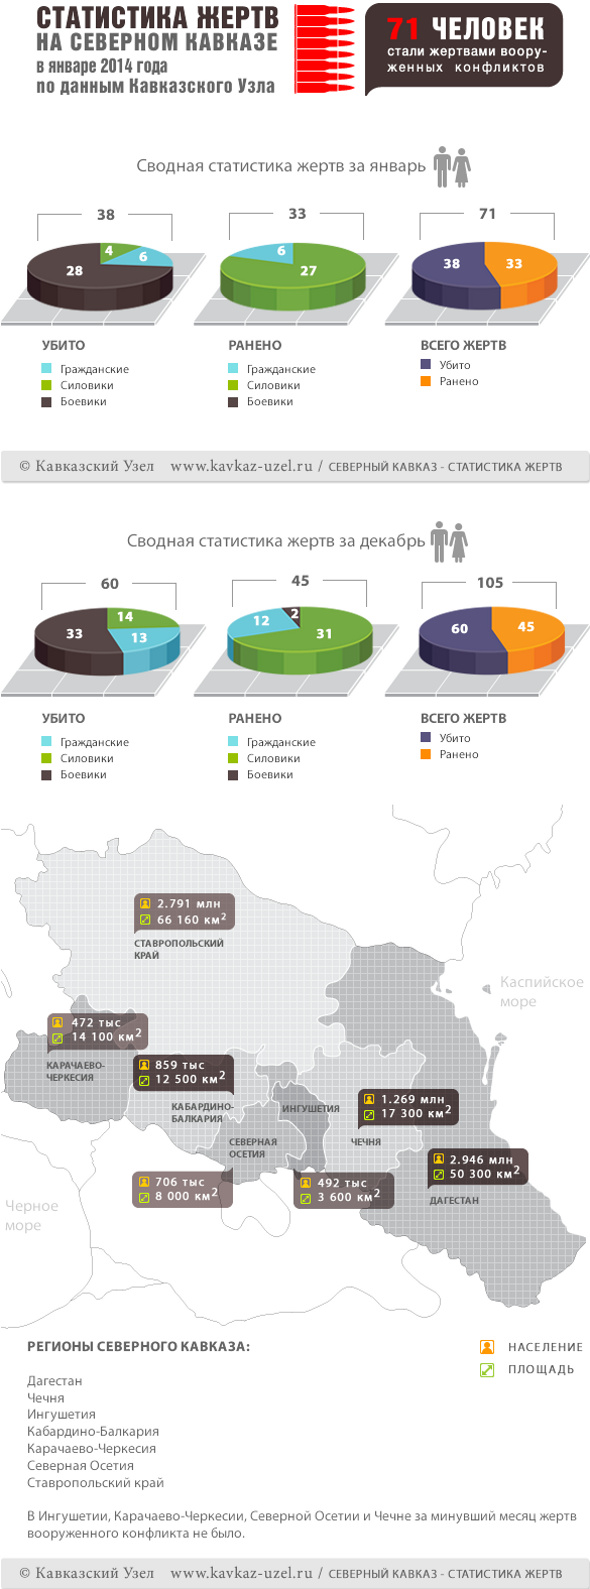 Инфографика. Статистика жертв на Северном Кавказе в январе 2014 года по данным "Кавказского узла"